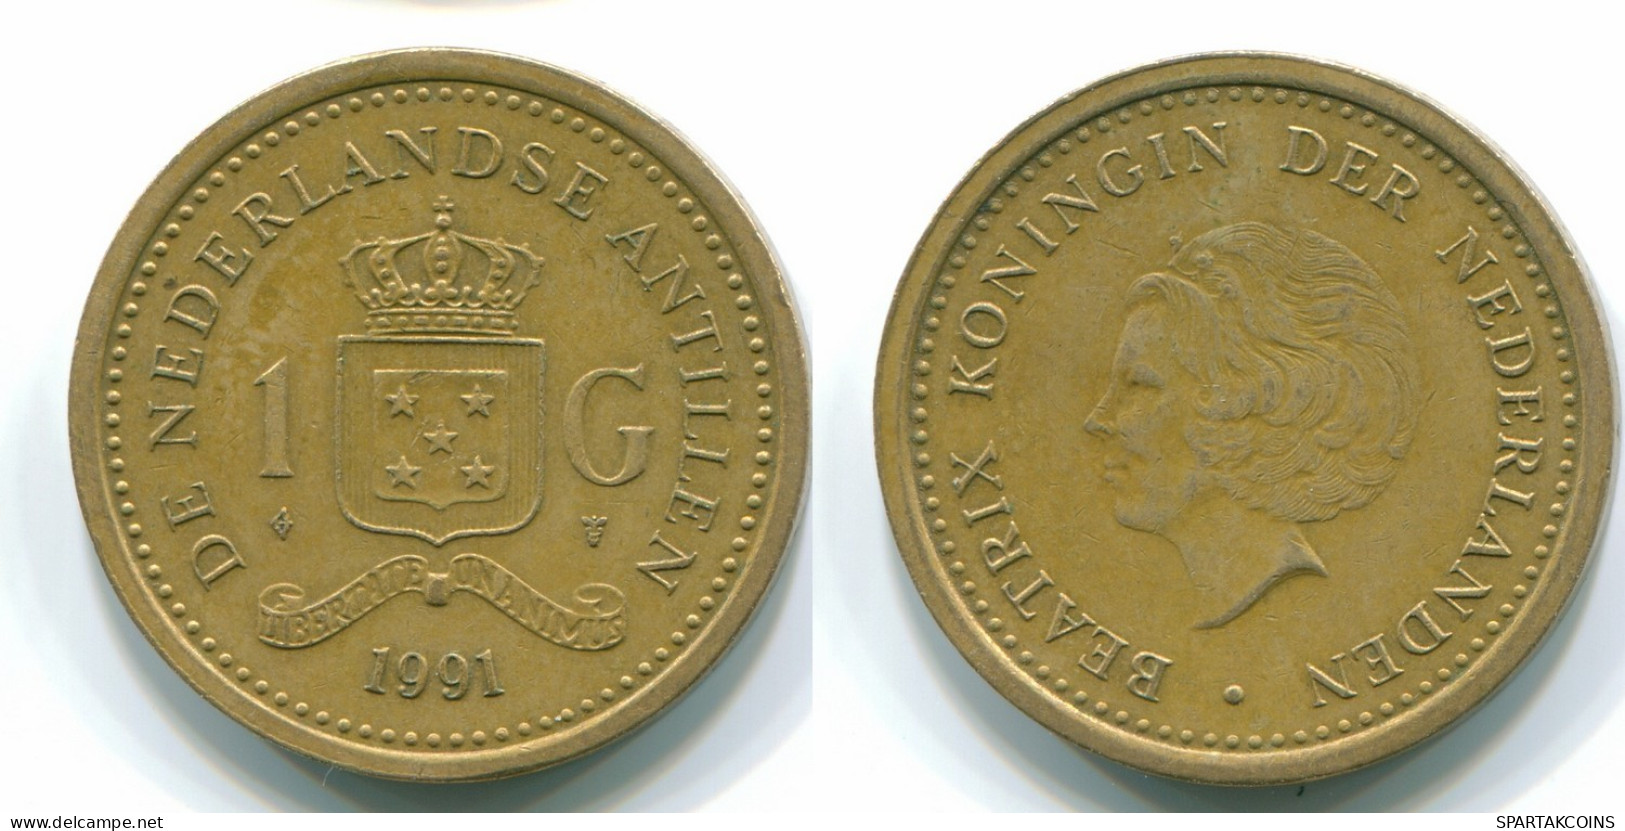 1 GULDEN 1991 NETHERLANDS ANTILLES Aureate Steel Colonial Coin #S12117.U.A - Niederländische Antillen